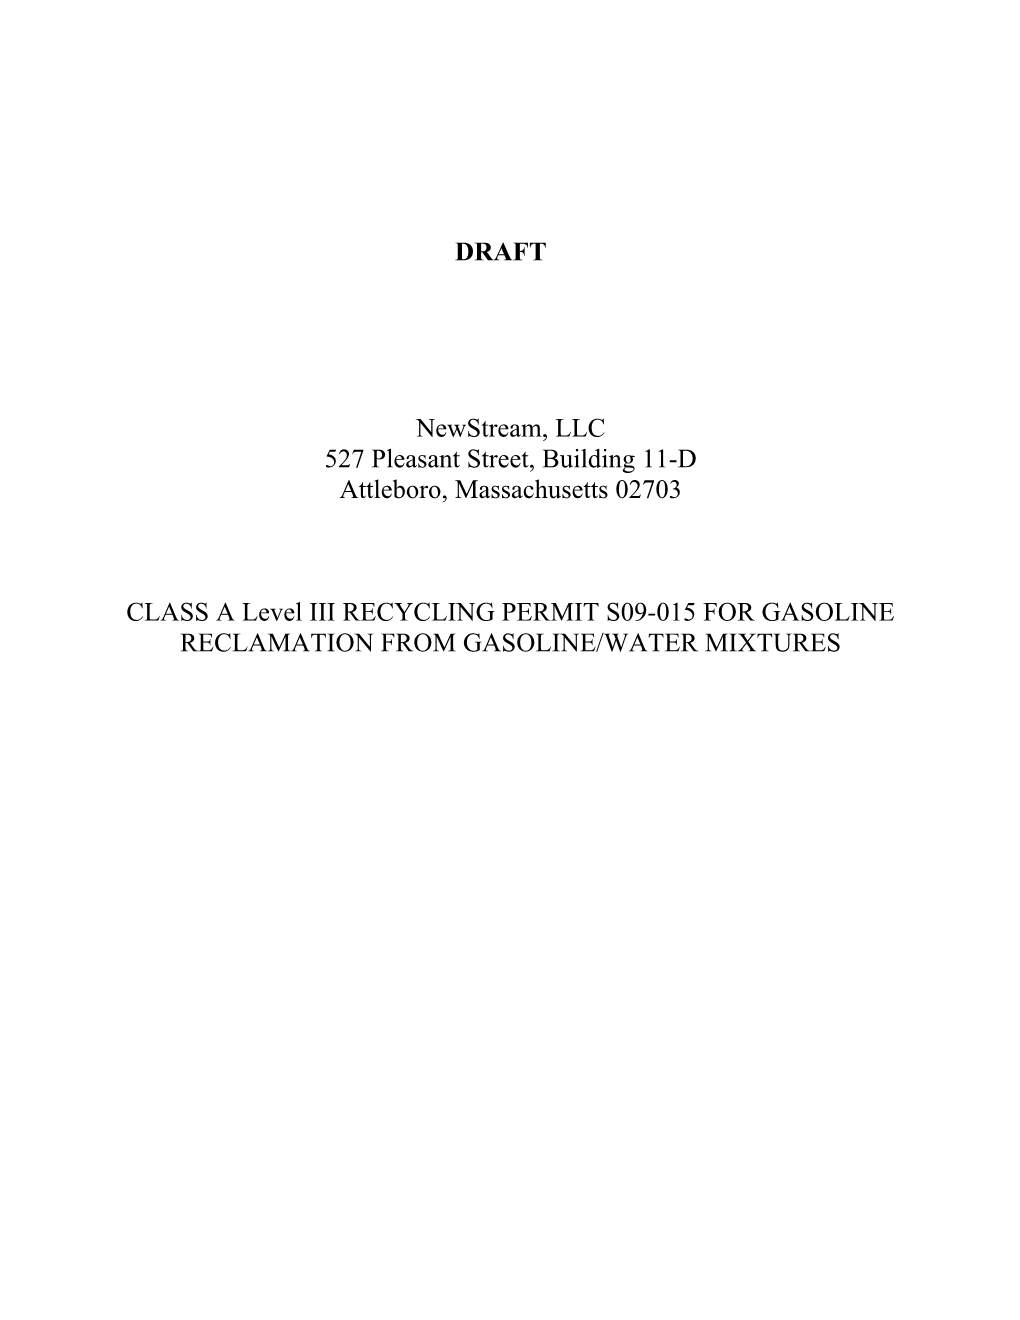 Gasoline/Water Mixtures DRAFT